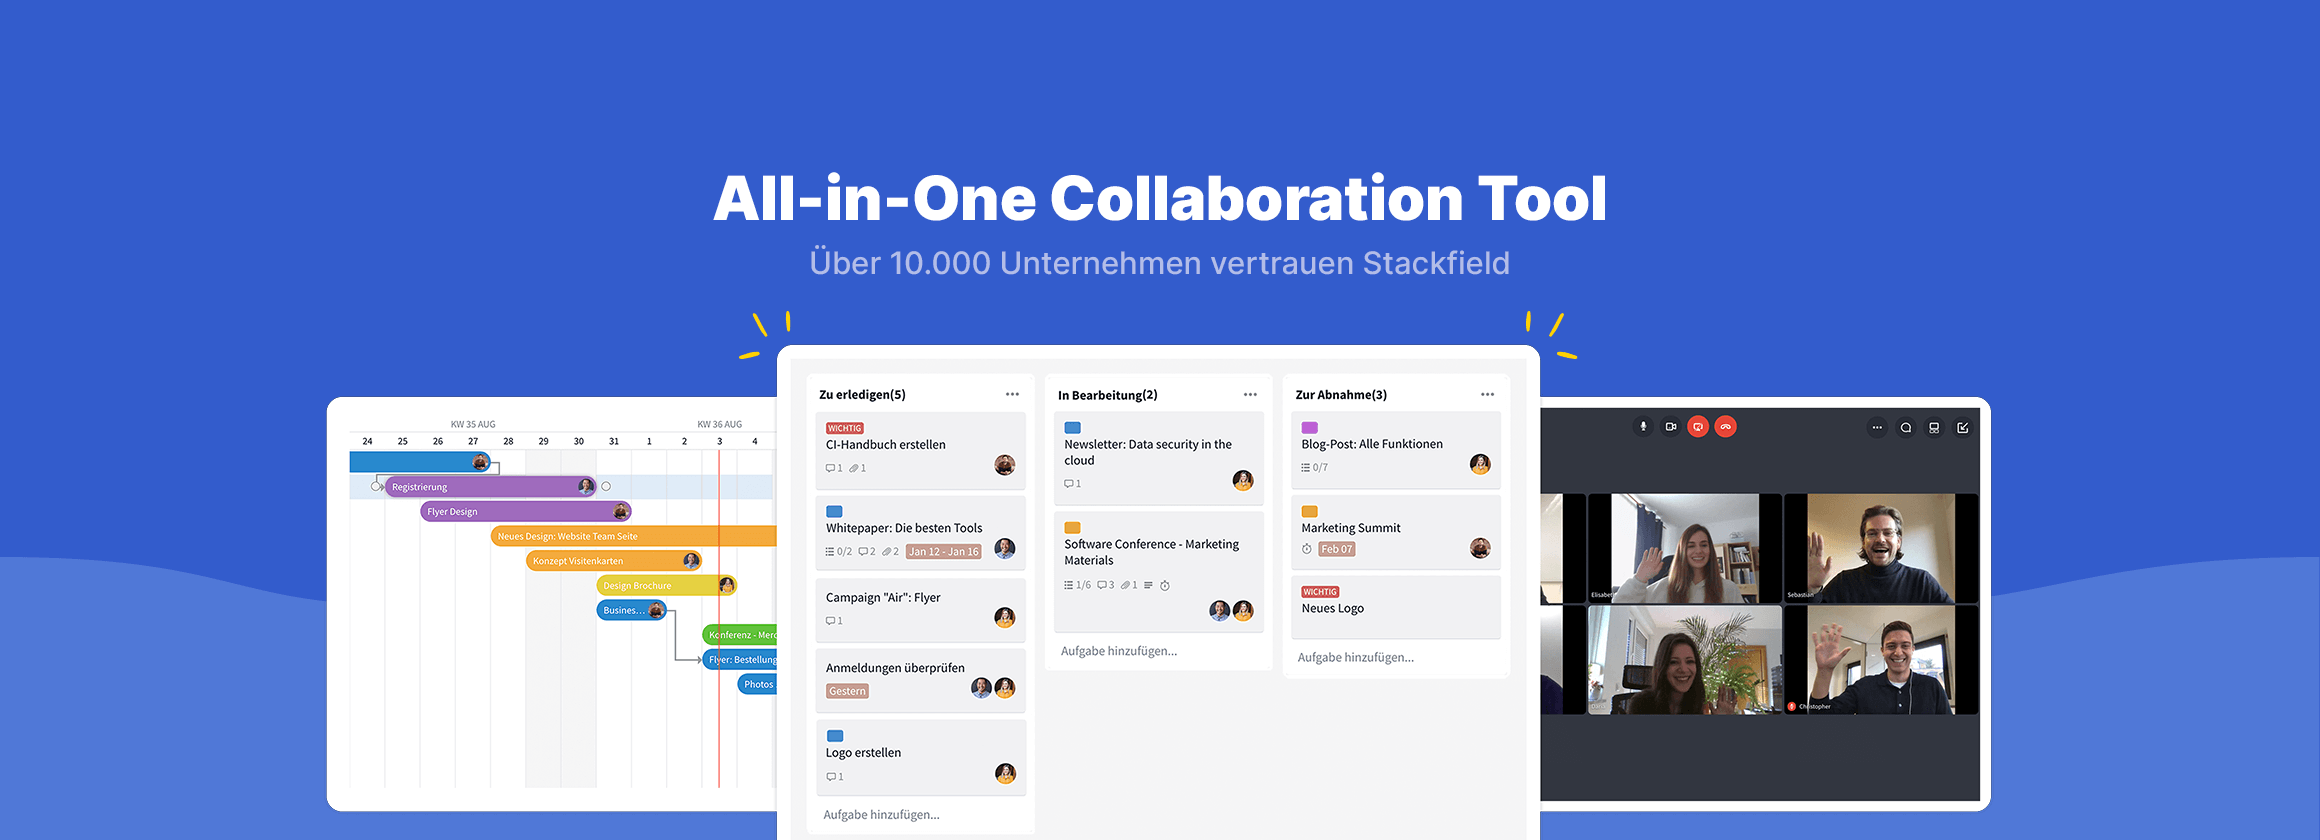 Bewertungen Stackfield: Das All-in-One Collaboration Tool aus Deutschland - Appvizer